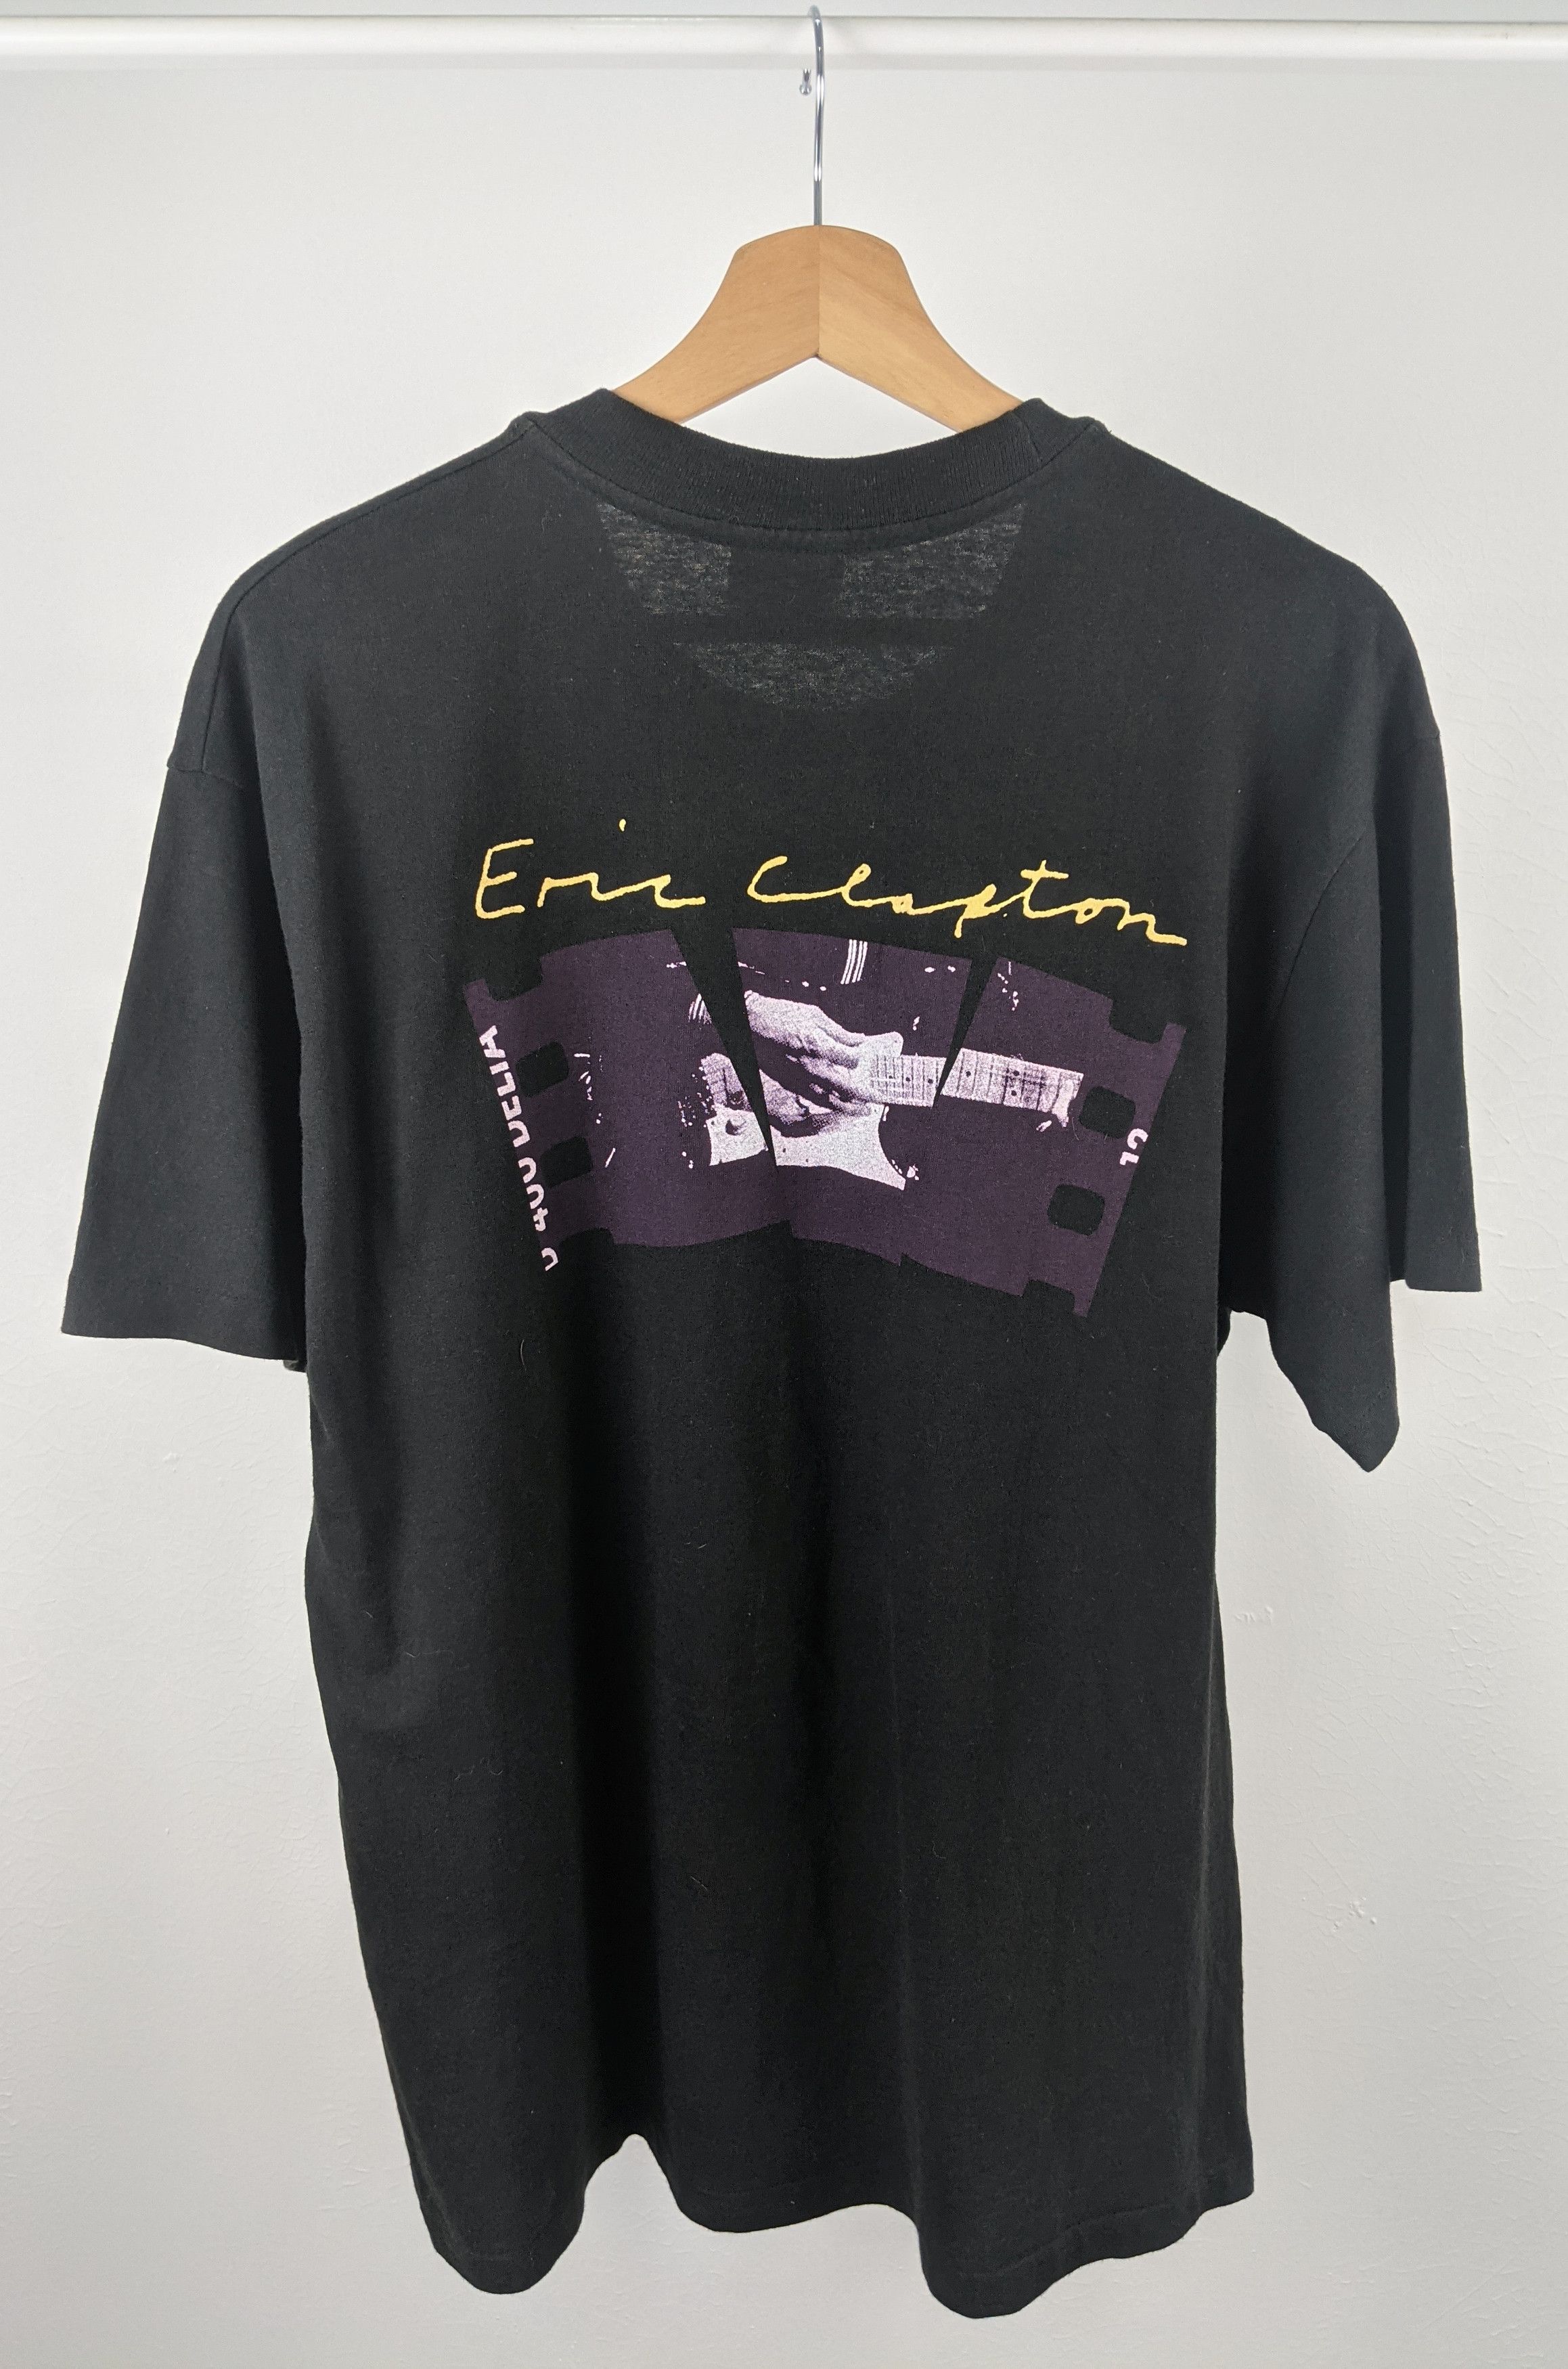 Vintage Vintage 90s 1992 Eric Clapton Shirt Size US L / EU 52-54 / 3 - 2 Preview